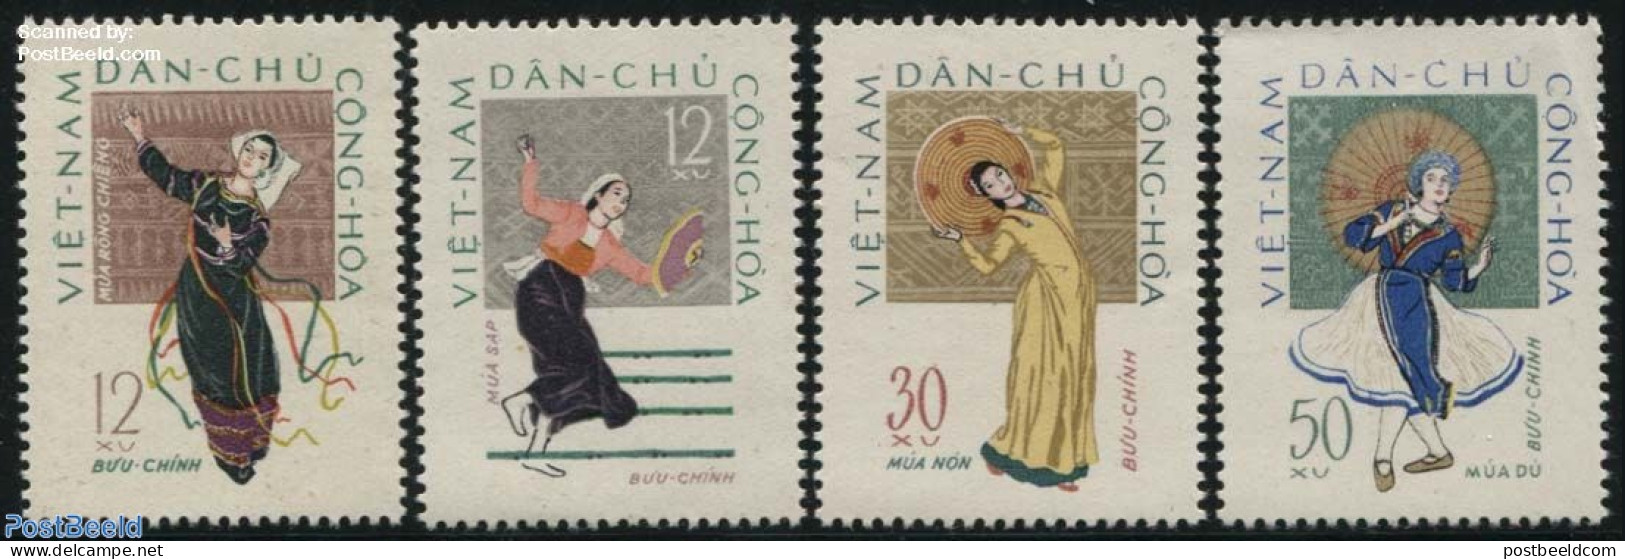 Vietnam 1962 Folk Dancing 4v, Mint NH, Performance Art - Dance & Ballet - Dans